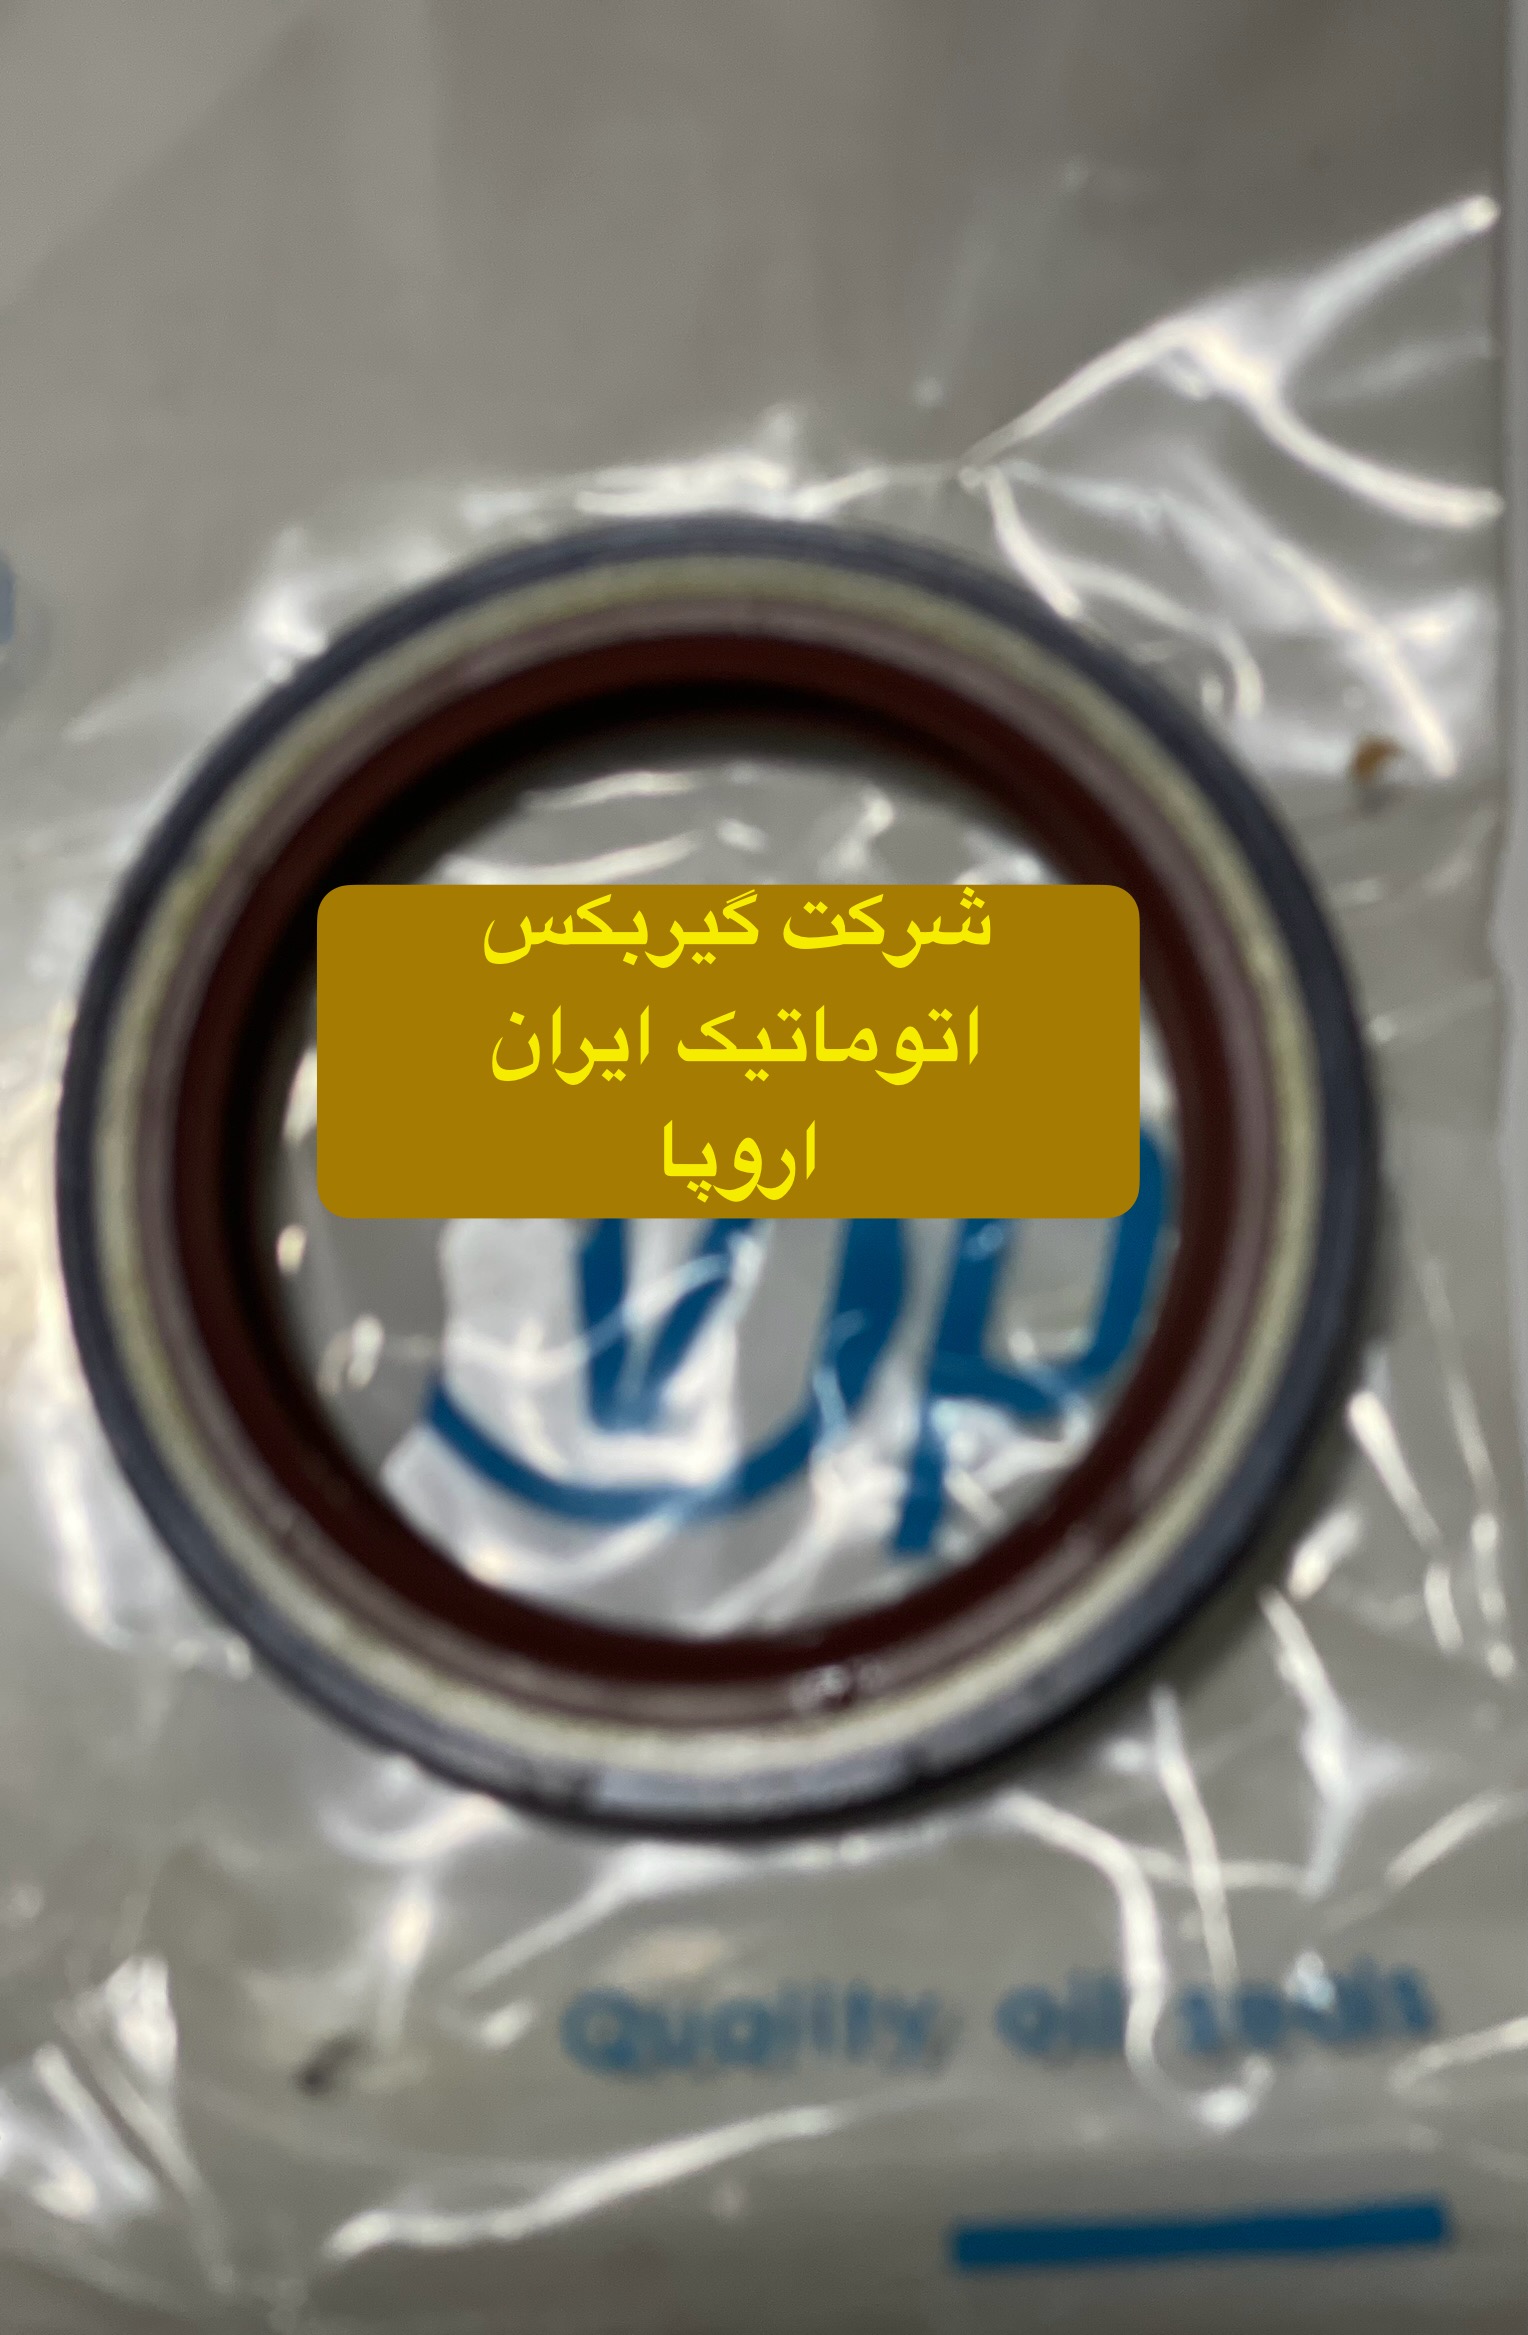 شرکت (تعمیرگاه) گیربکس اتوماتیک ایران اروپافروش کاسه نمد اویل پمب گیربکس اتوماتیک پژو 206 